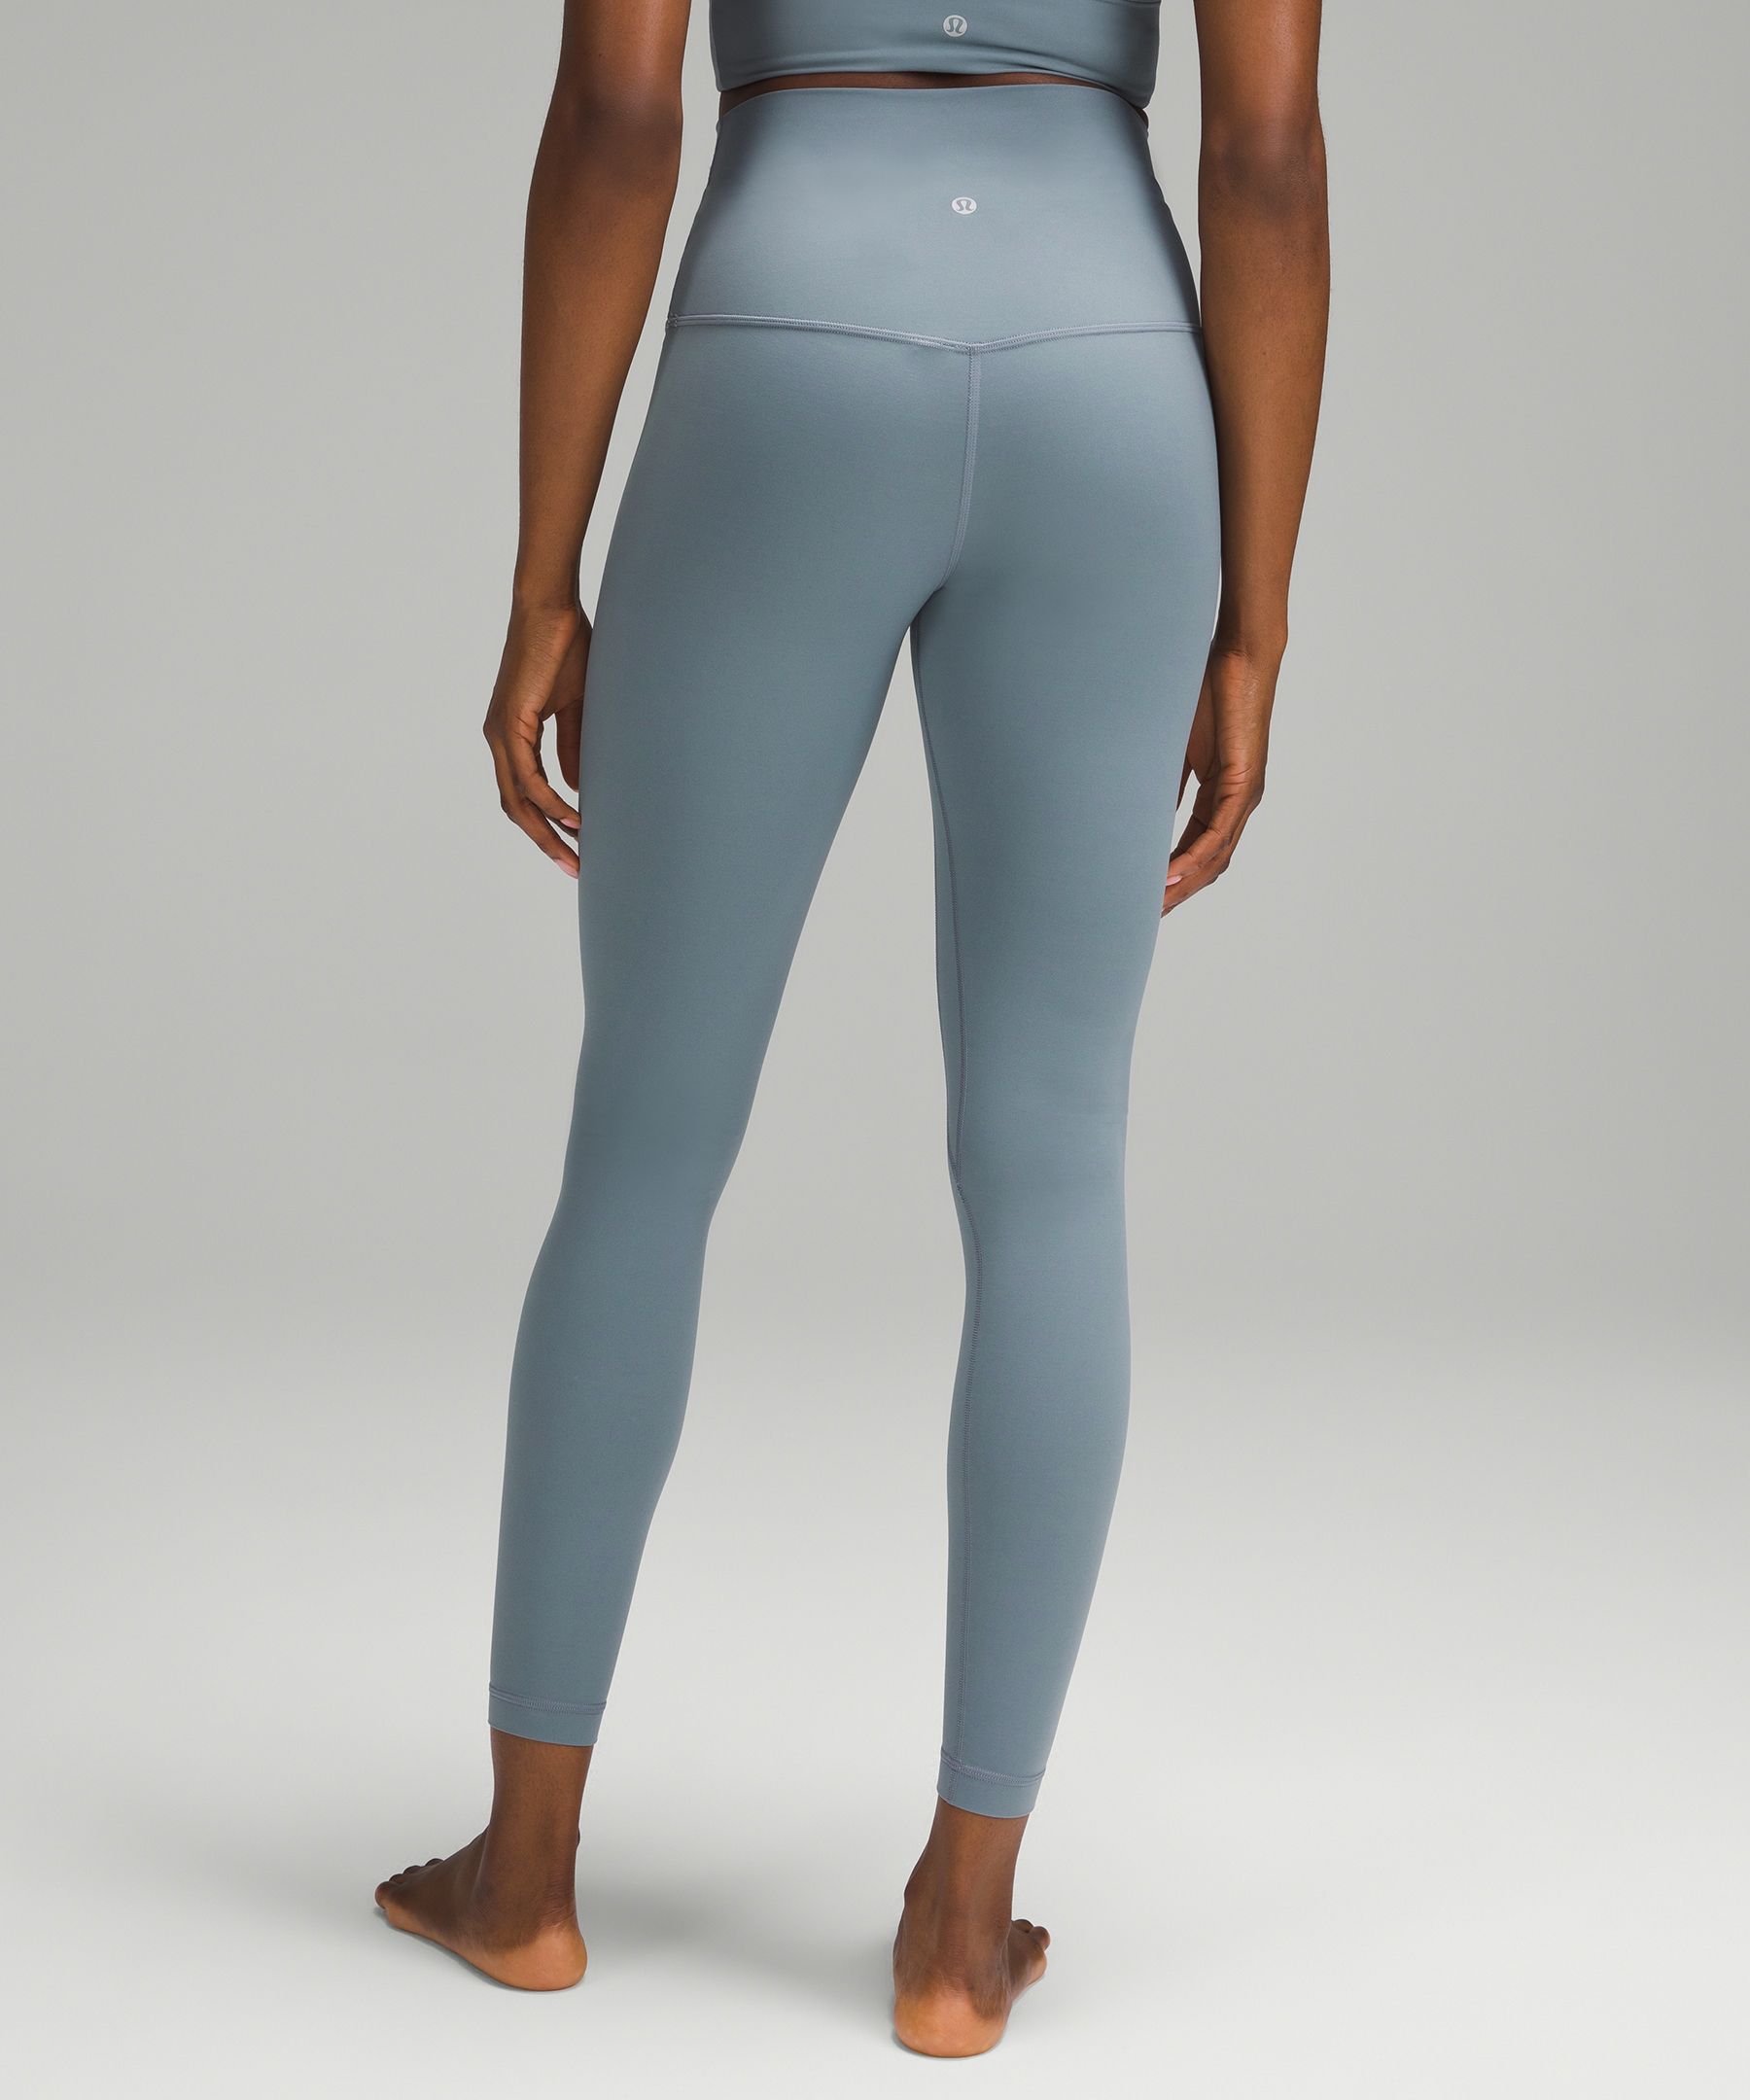 lululemon Align™ Super-High-Rise Pant 28" | Women's Leggings/Tights